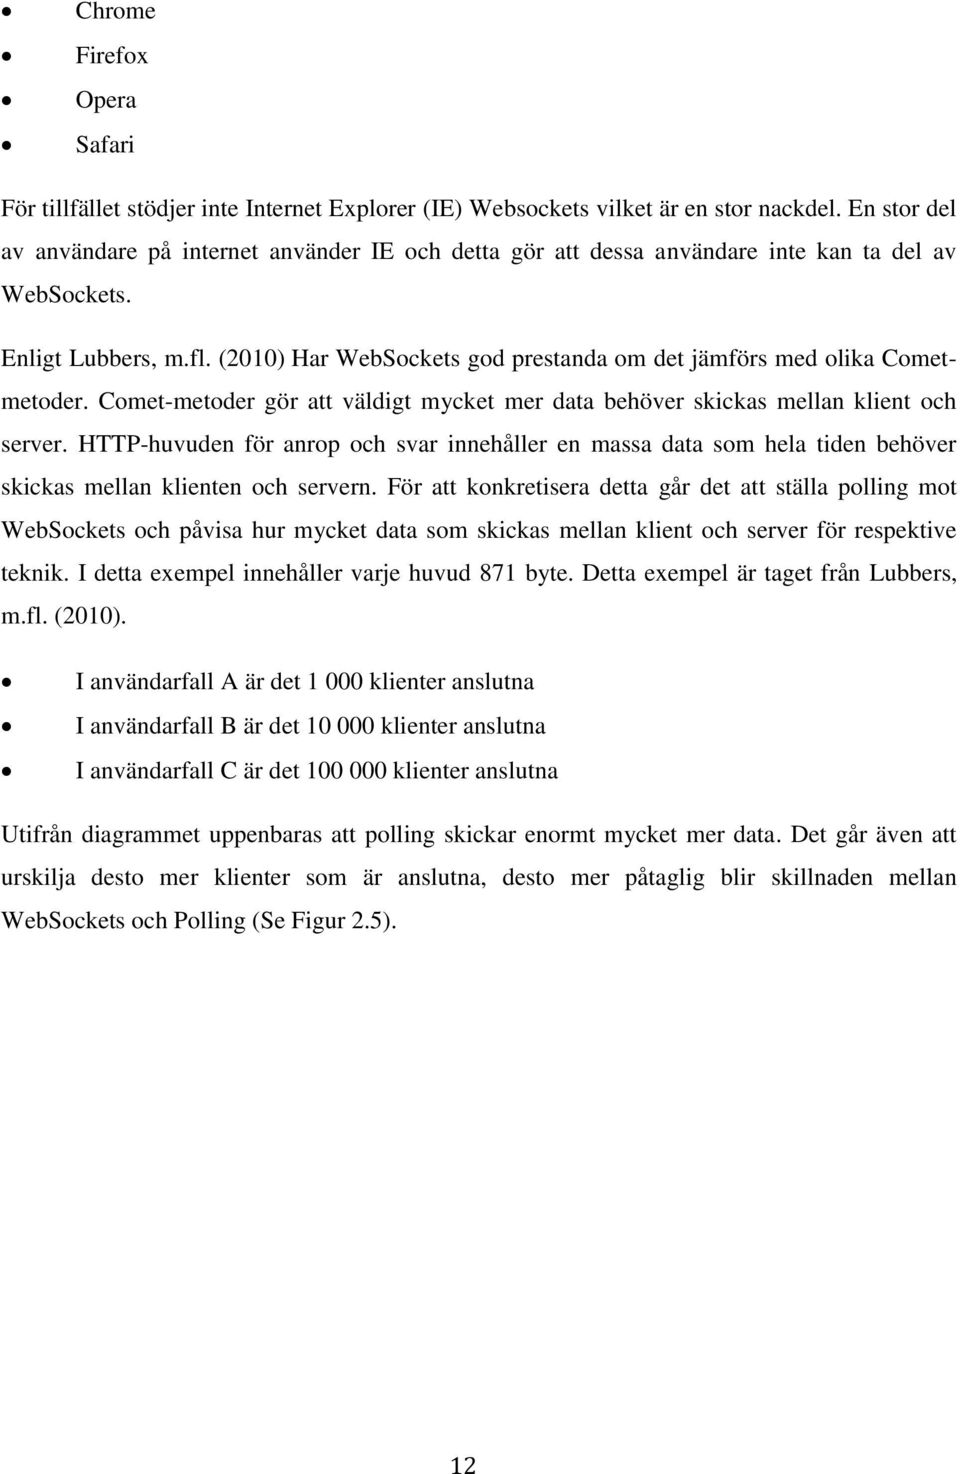 (2010) Har WebSockets god prestanda om det jämförs med olika Cometmetoder. Comet-metoder gör att väldigt mycket mer data behöver skickas mellan klient och server.